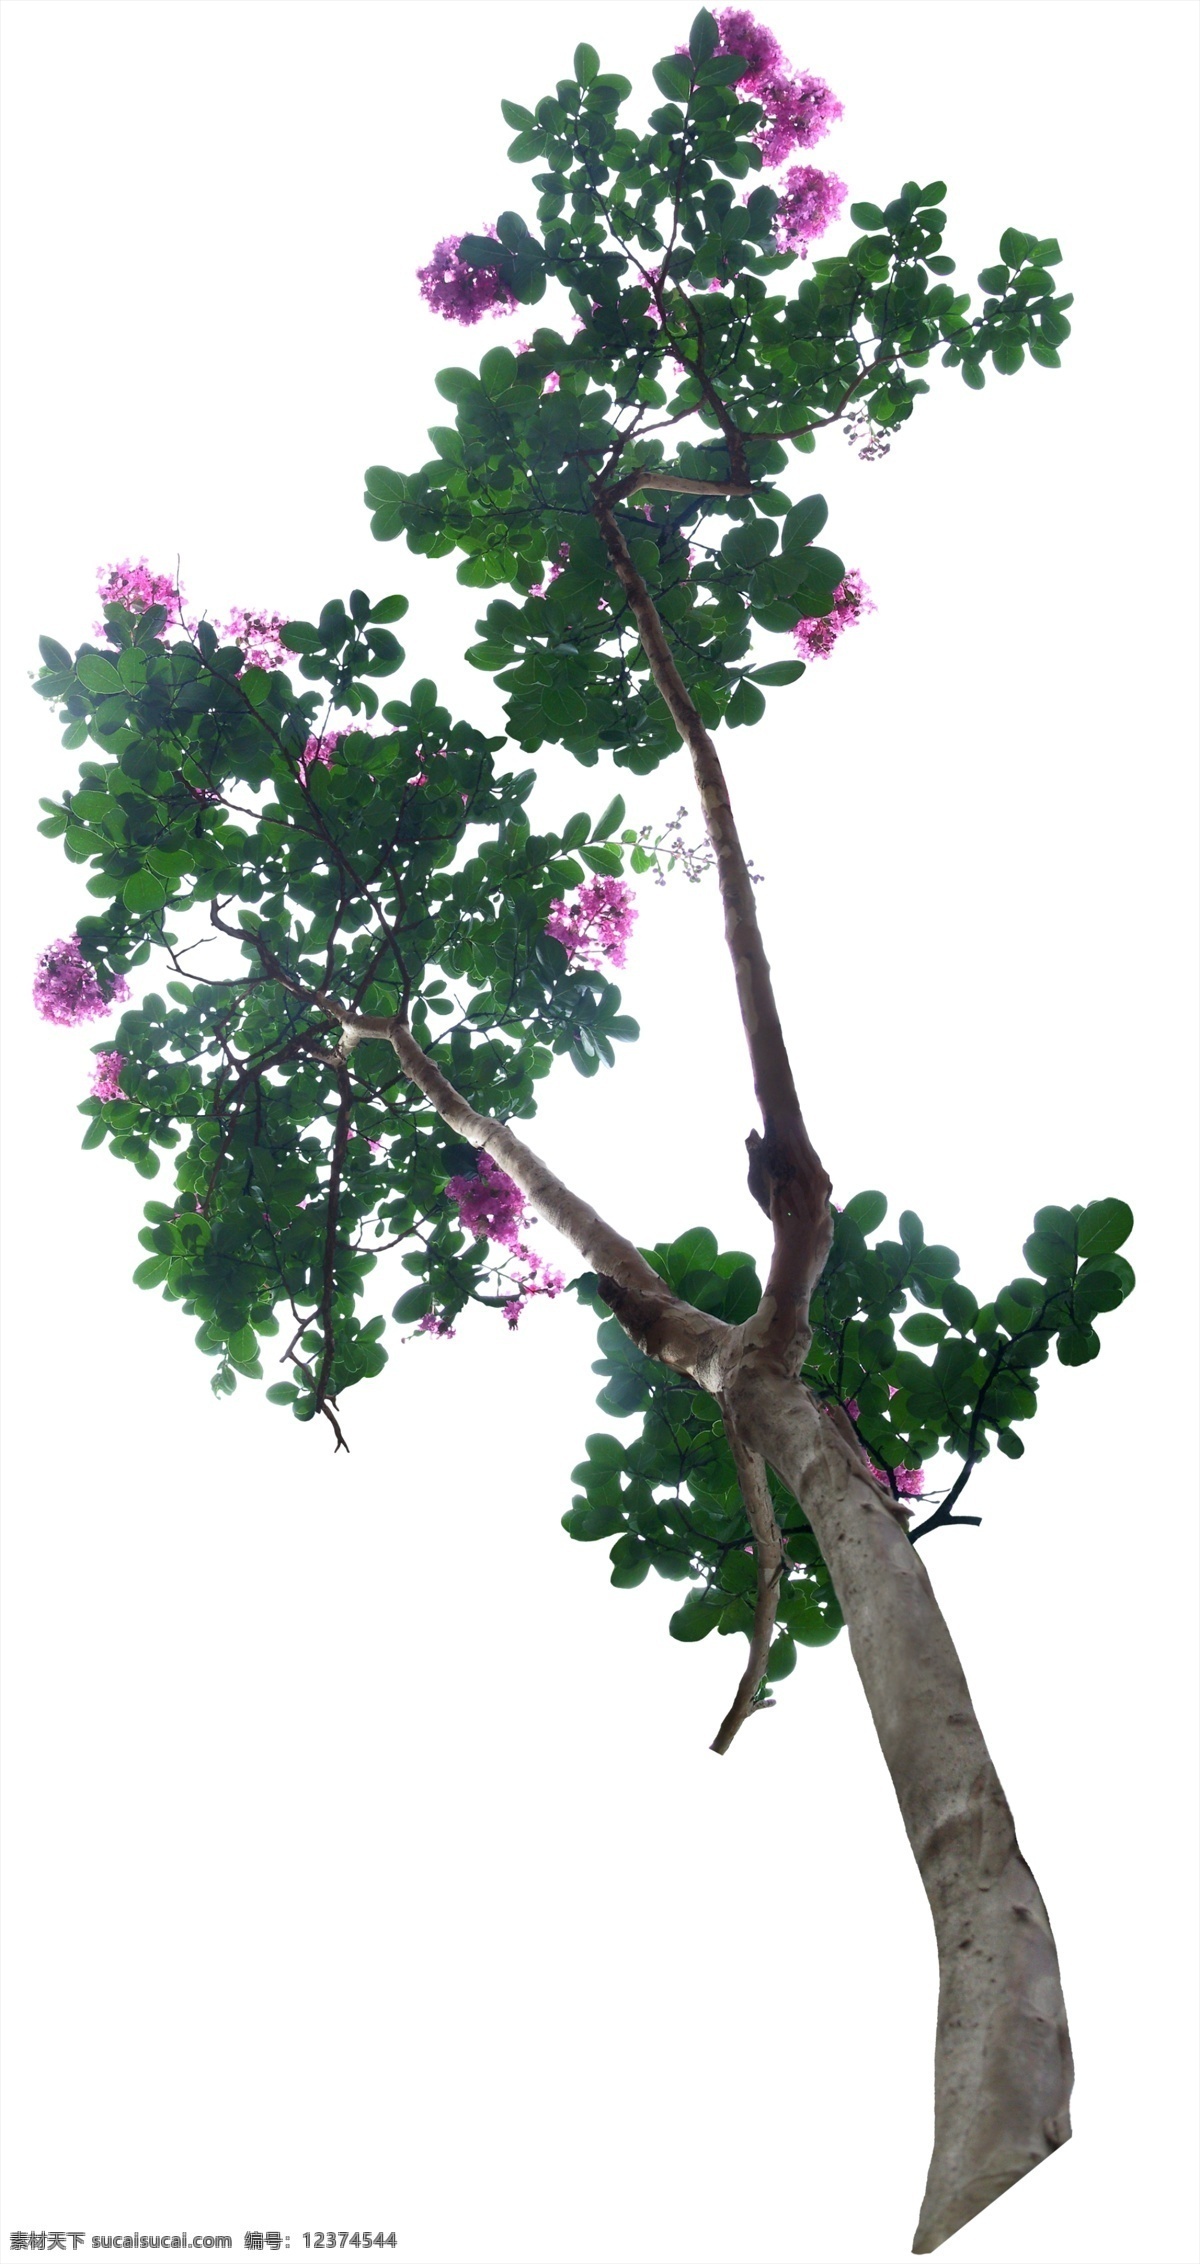 psd源文件 花卉 鲜花 源文件 树木 后期 环境艺术 贴图 小树 花 环境后期